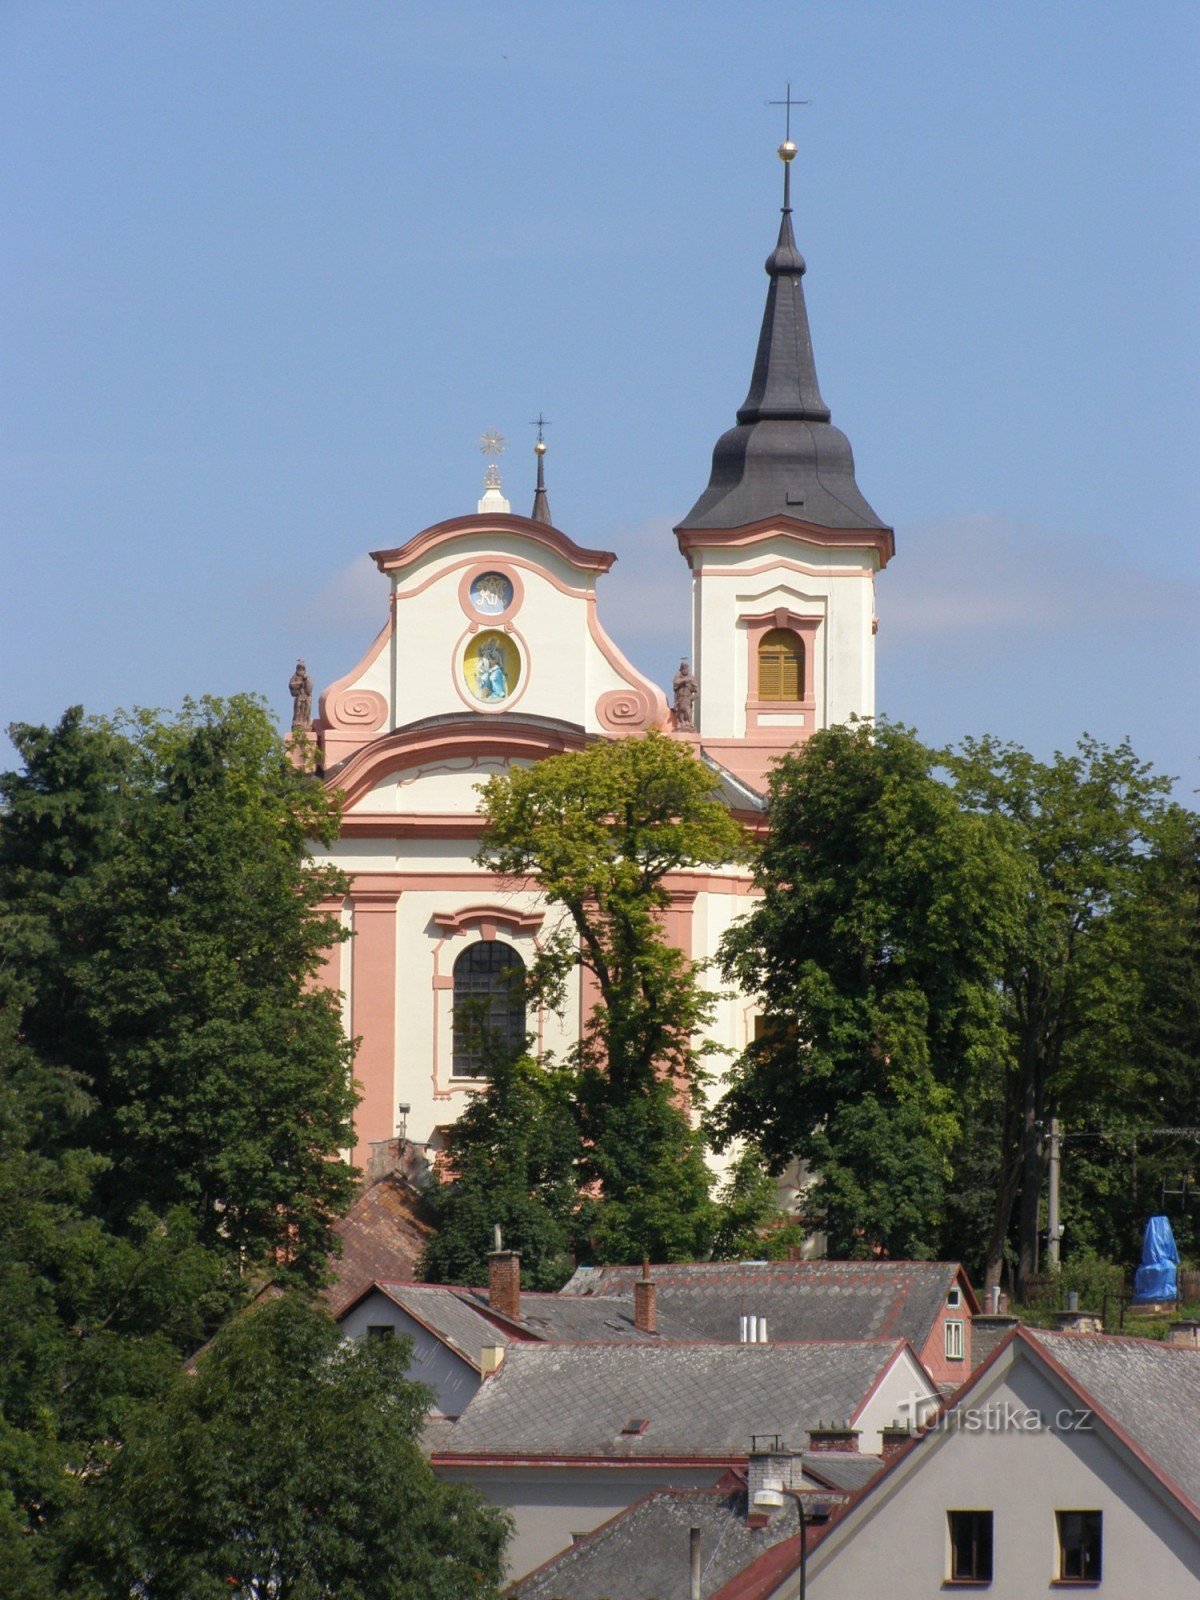 Nová Paka - klášterní kostel Nanebevzetí Panny Marie